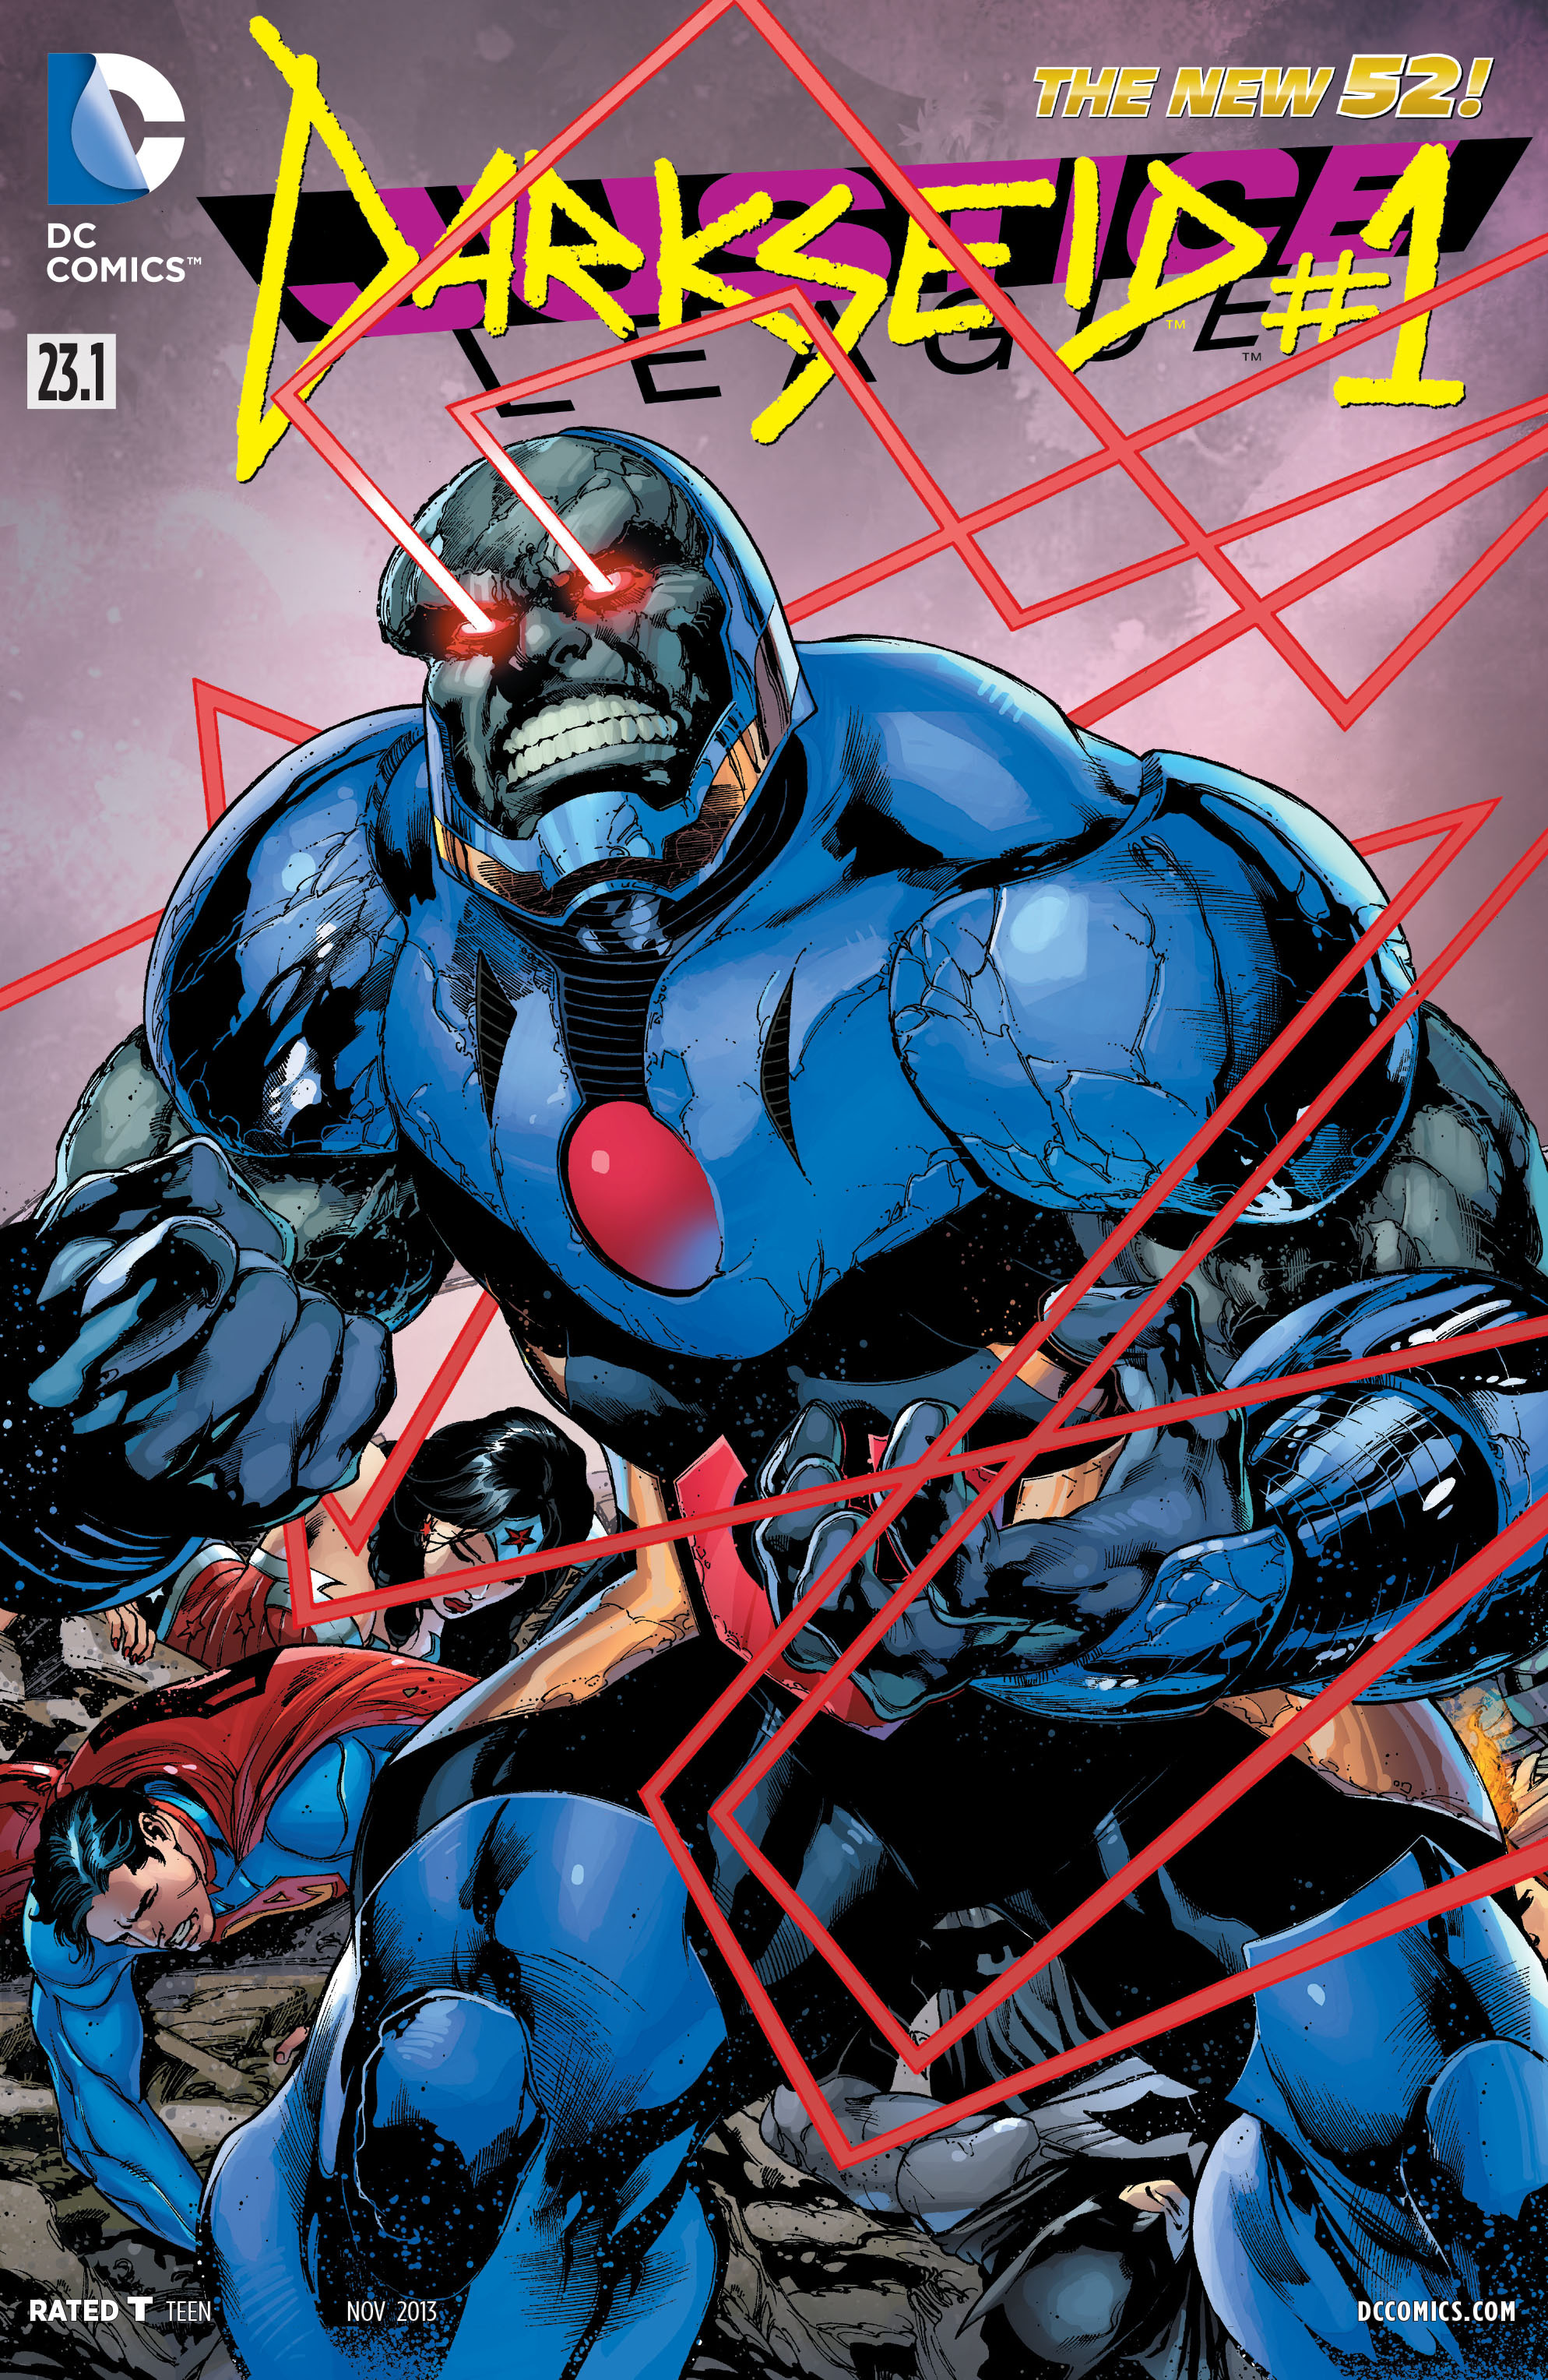 Justice League Vol 2 23.1: Darkseid | Wiki DC Comics | FANDOM powered